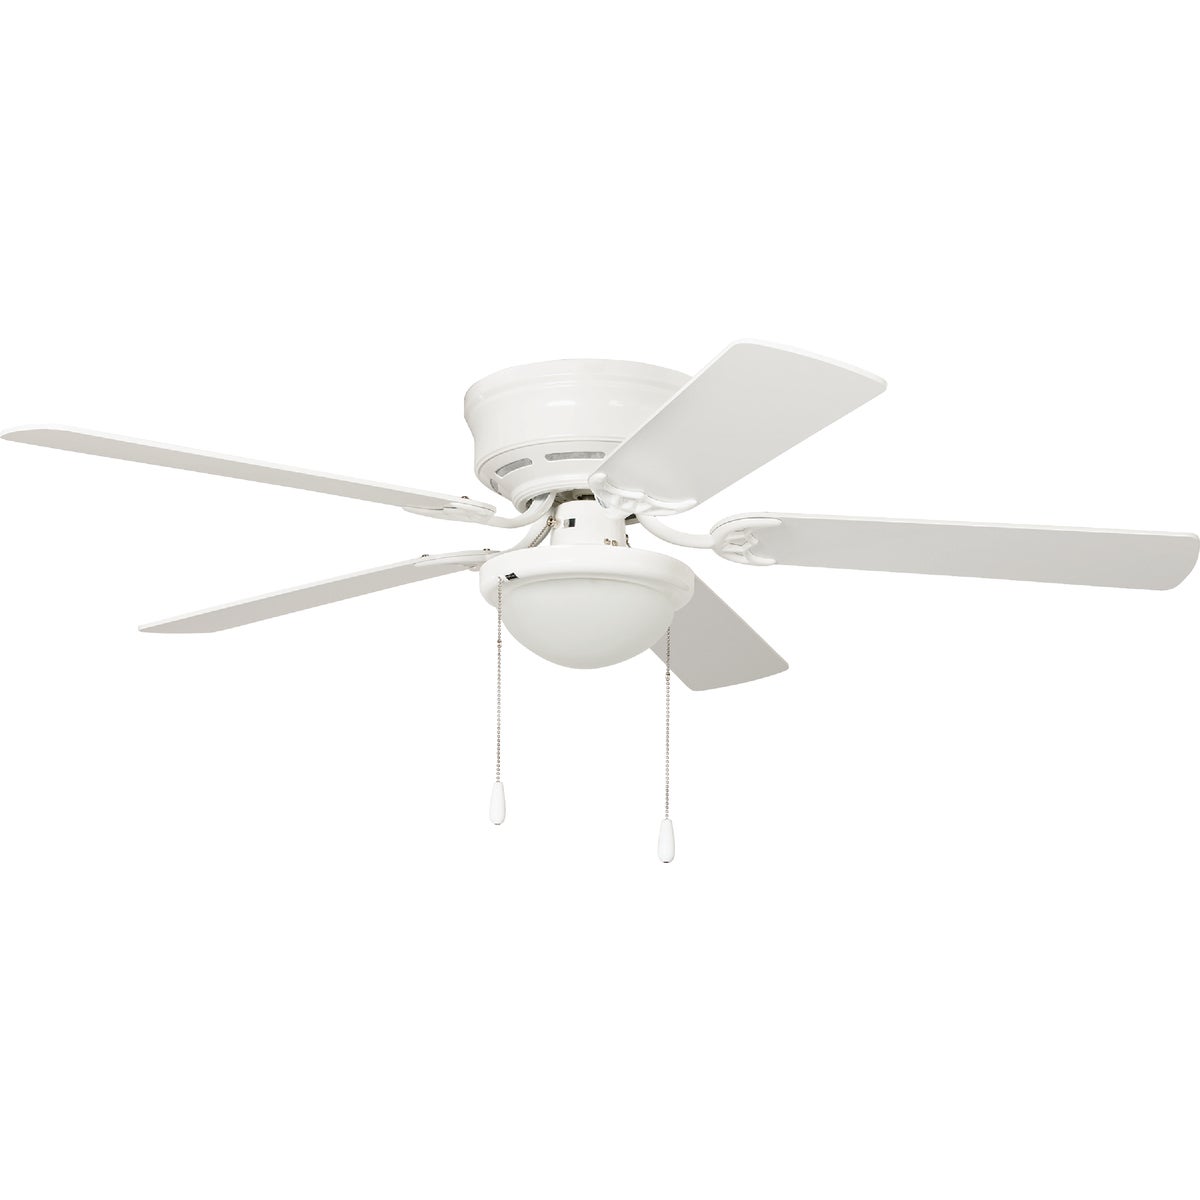 Item 508233, 3-speed, 5-blade ceiling fan.